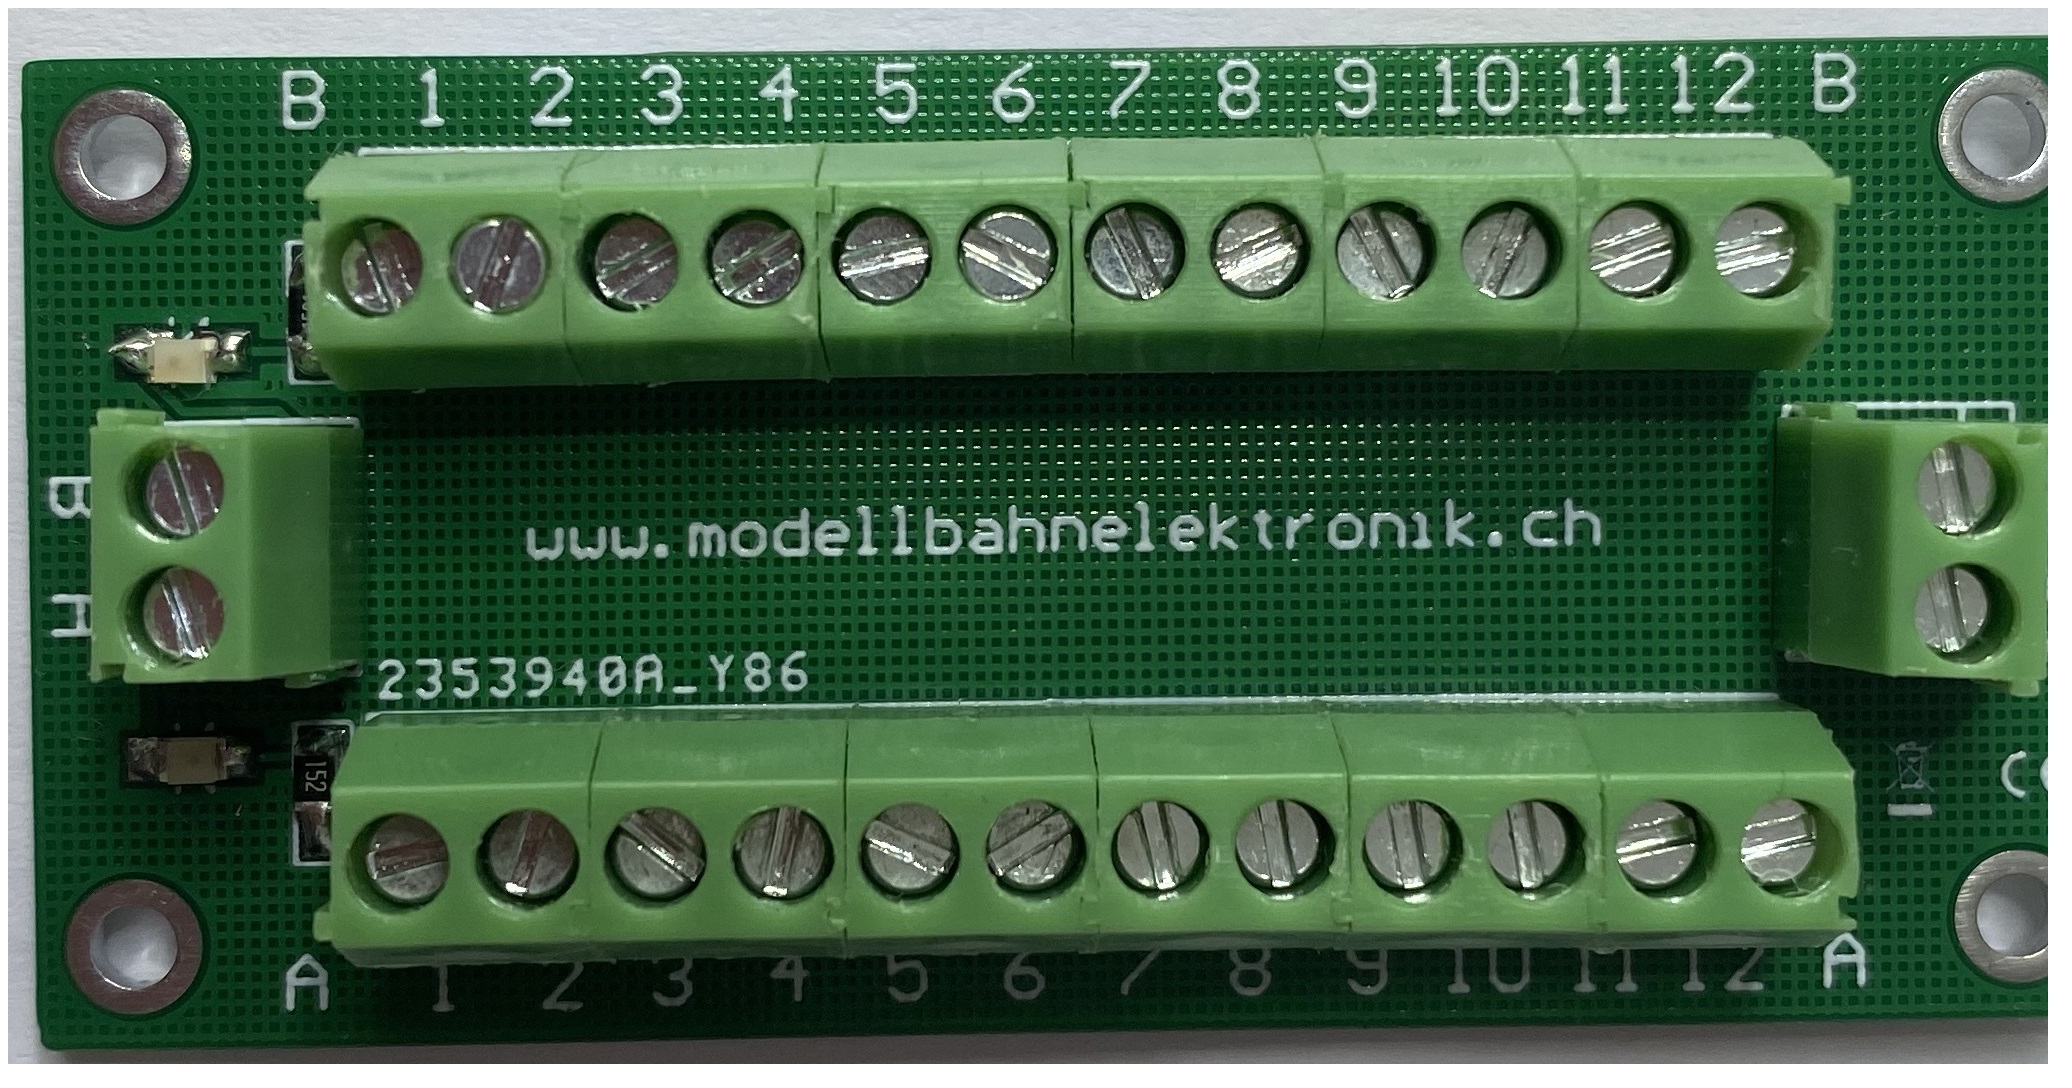 https://www.modellbahnelektronik.ch/media/image/4a/9a/24/TYP-B-1.jpg